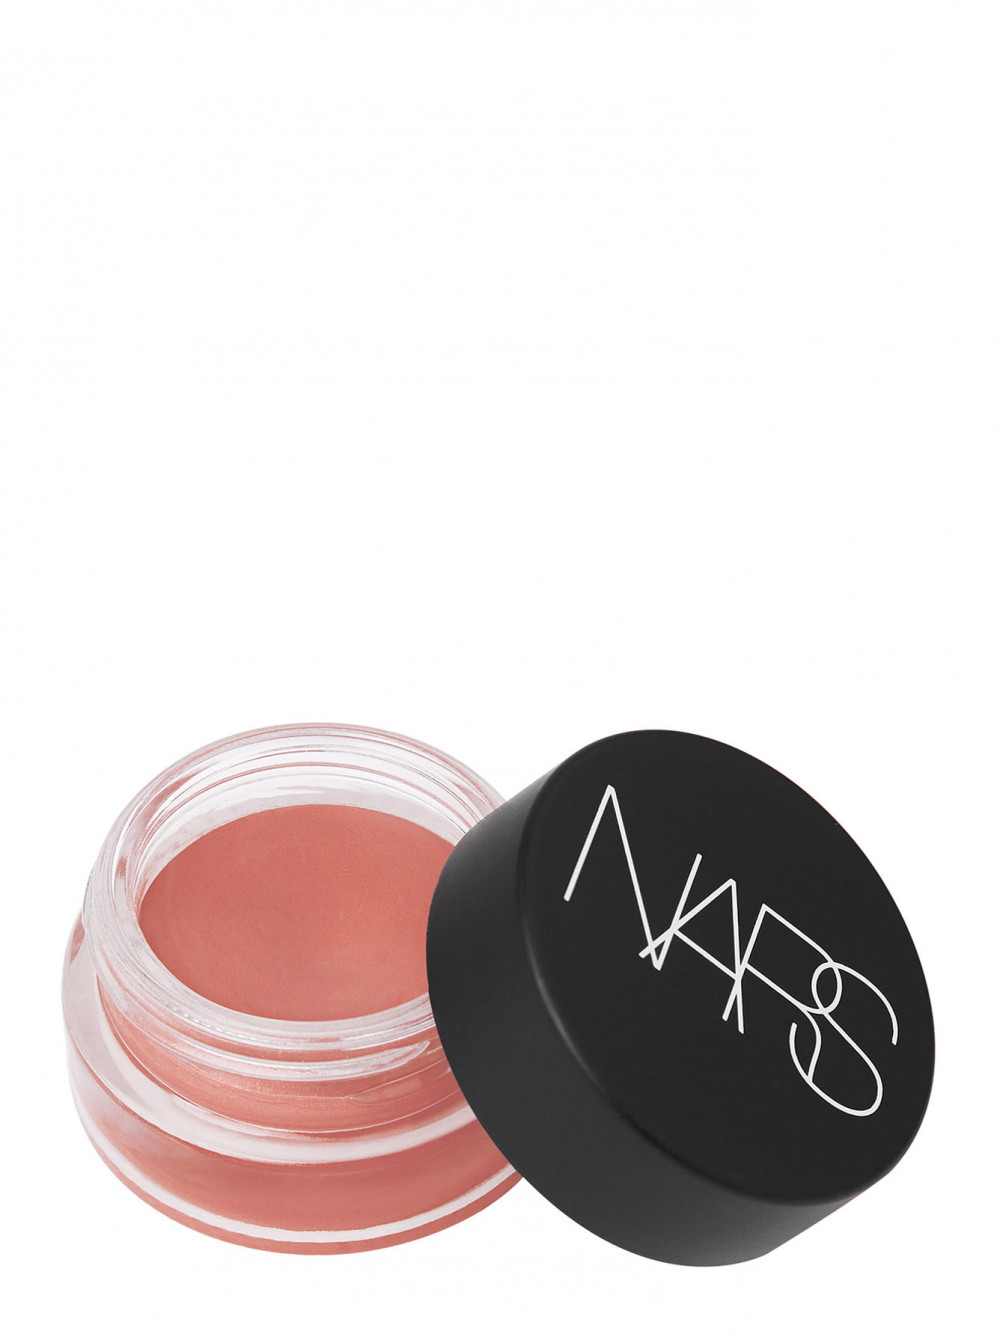  Кремовые румяна Air Matte Blush NARS Makeup - Общий вид